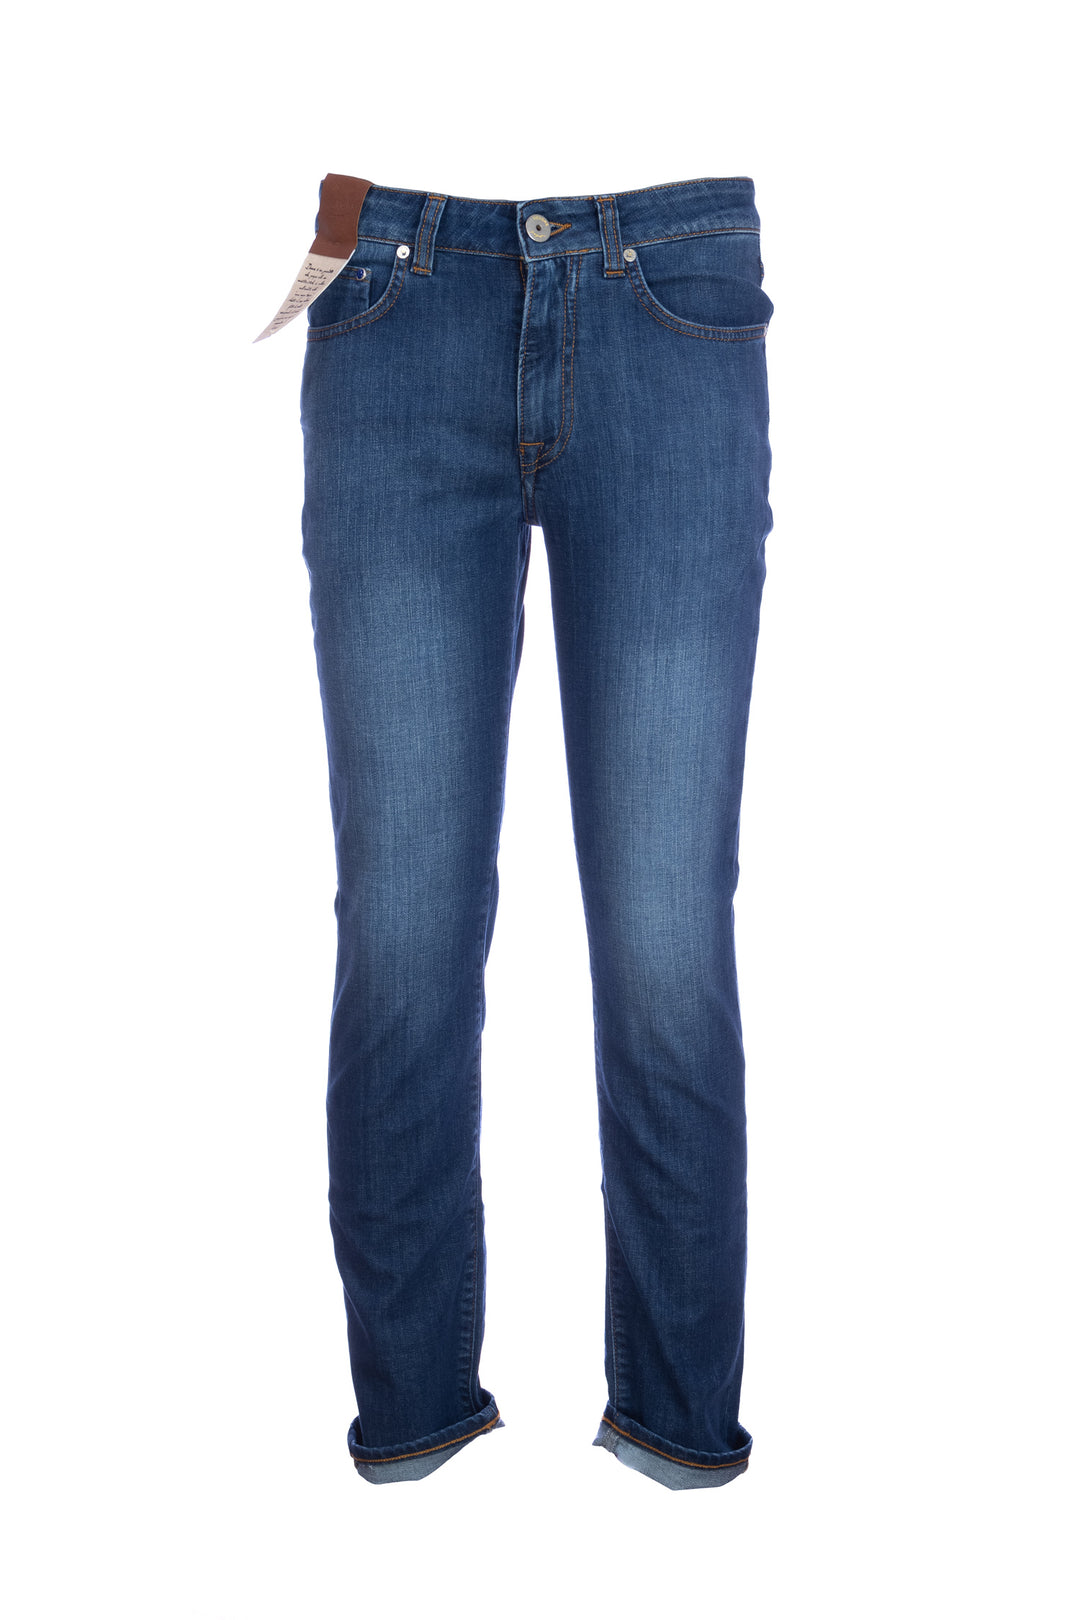 DEVORE Jeans 5 tasche in cotone stretch lavaggio medio - Mancinelli 1954